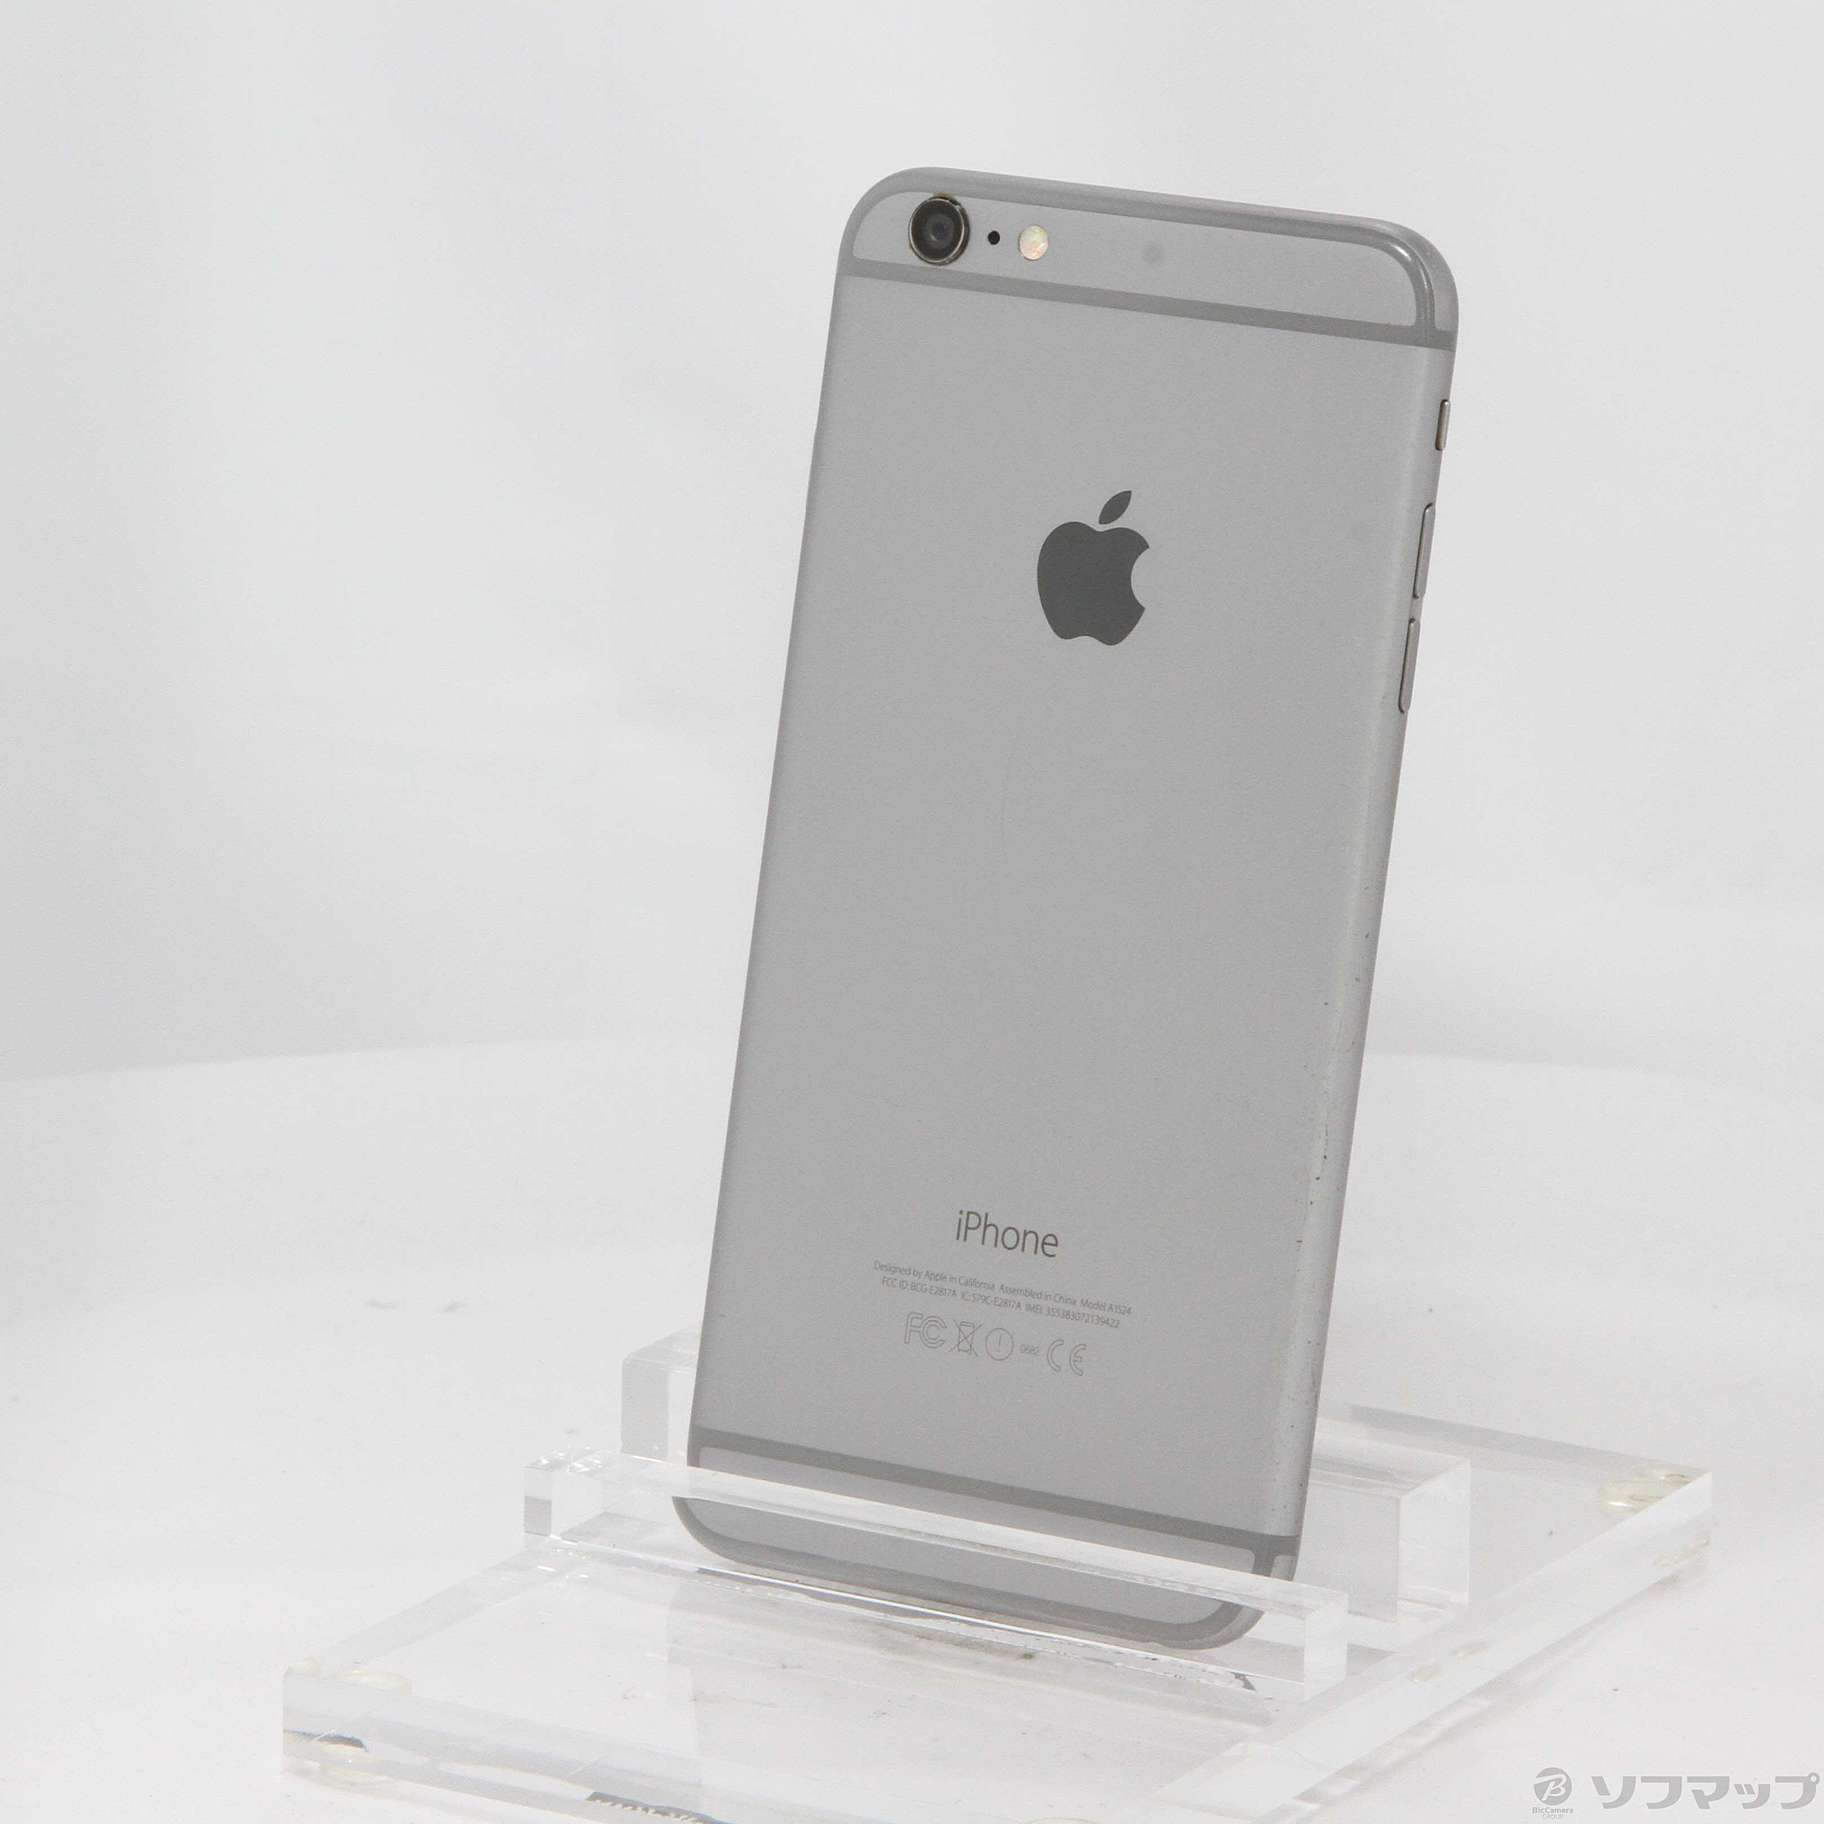 iPhone6 ソフトバンク版 64GB スペースグレー